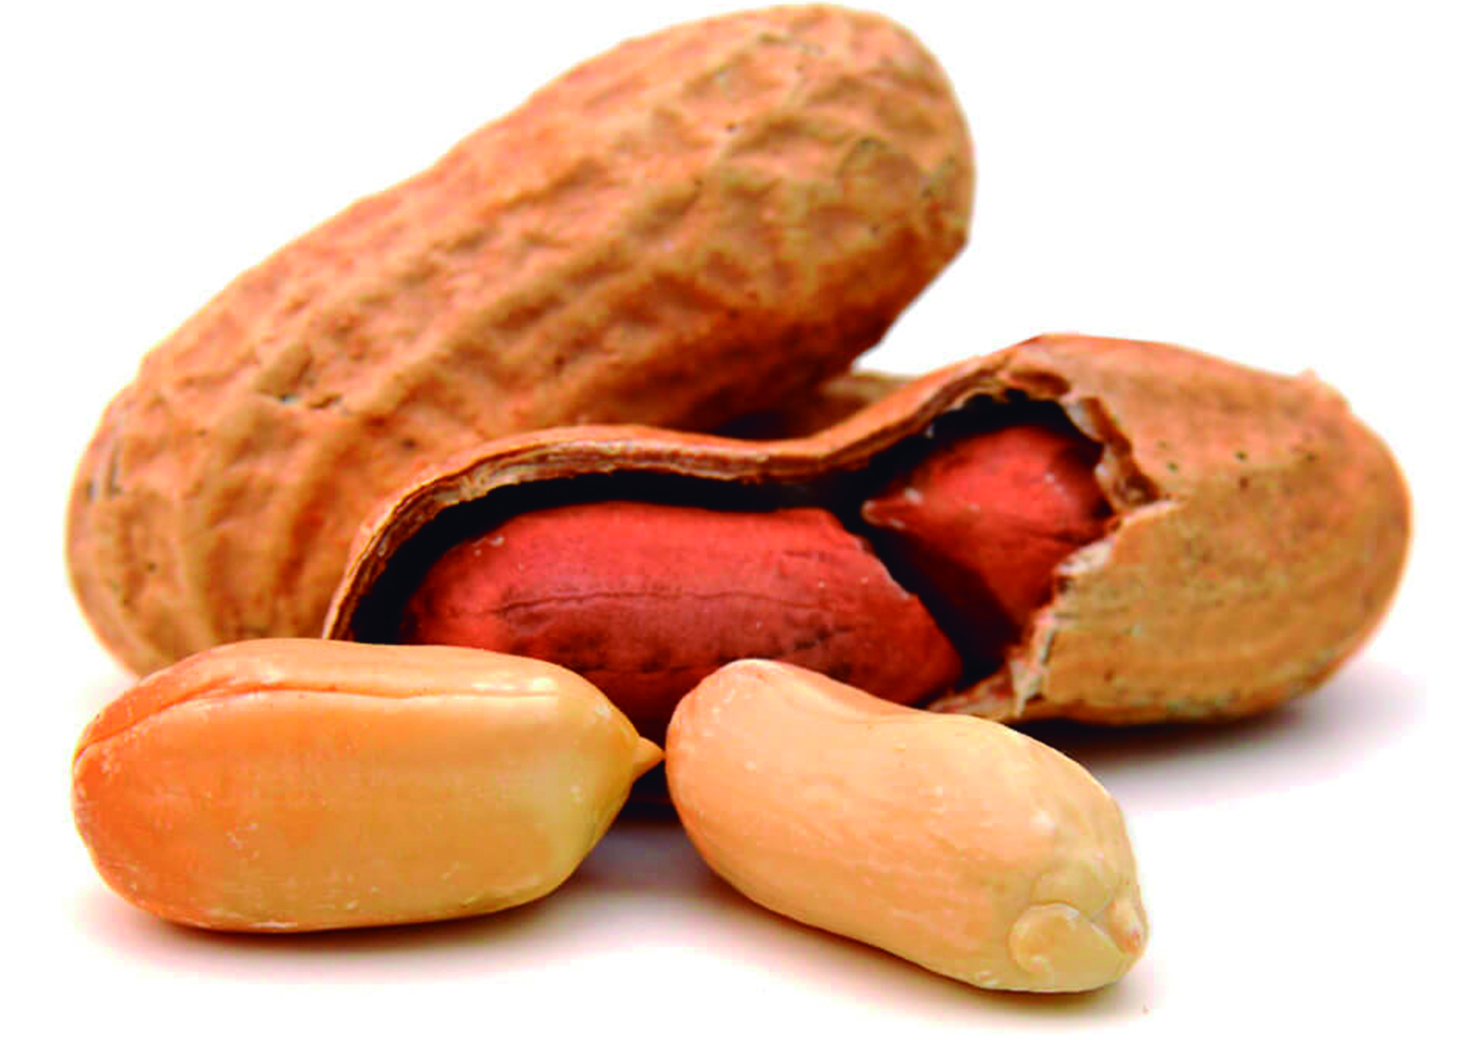 The Humble Peanut